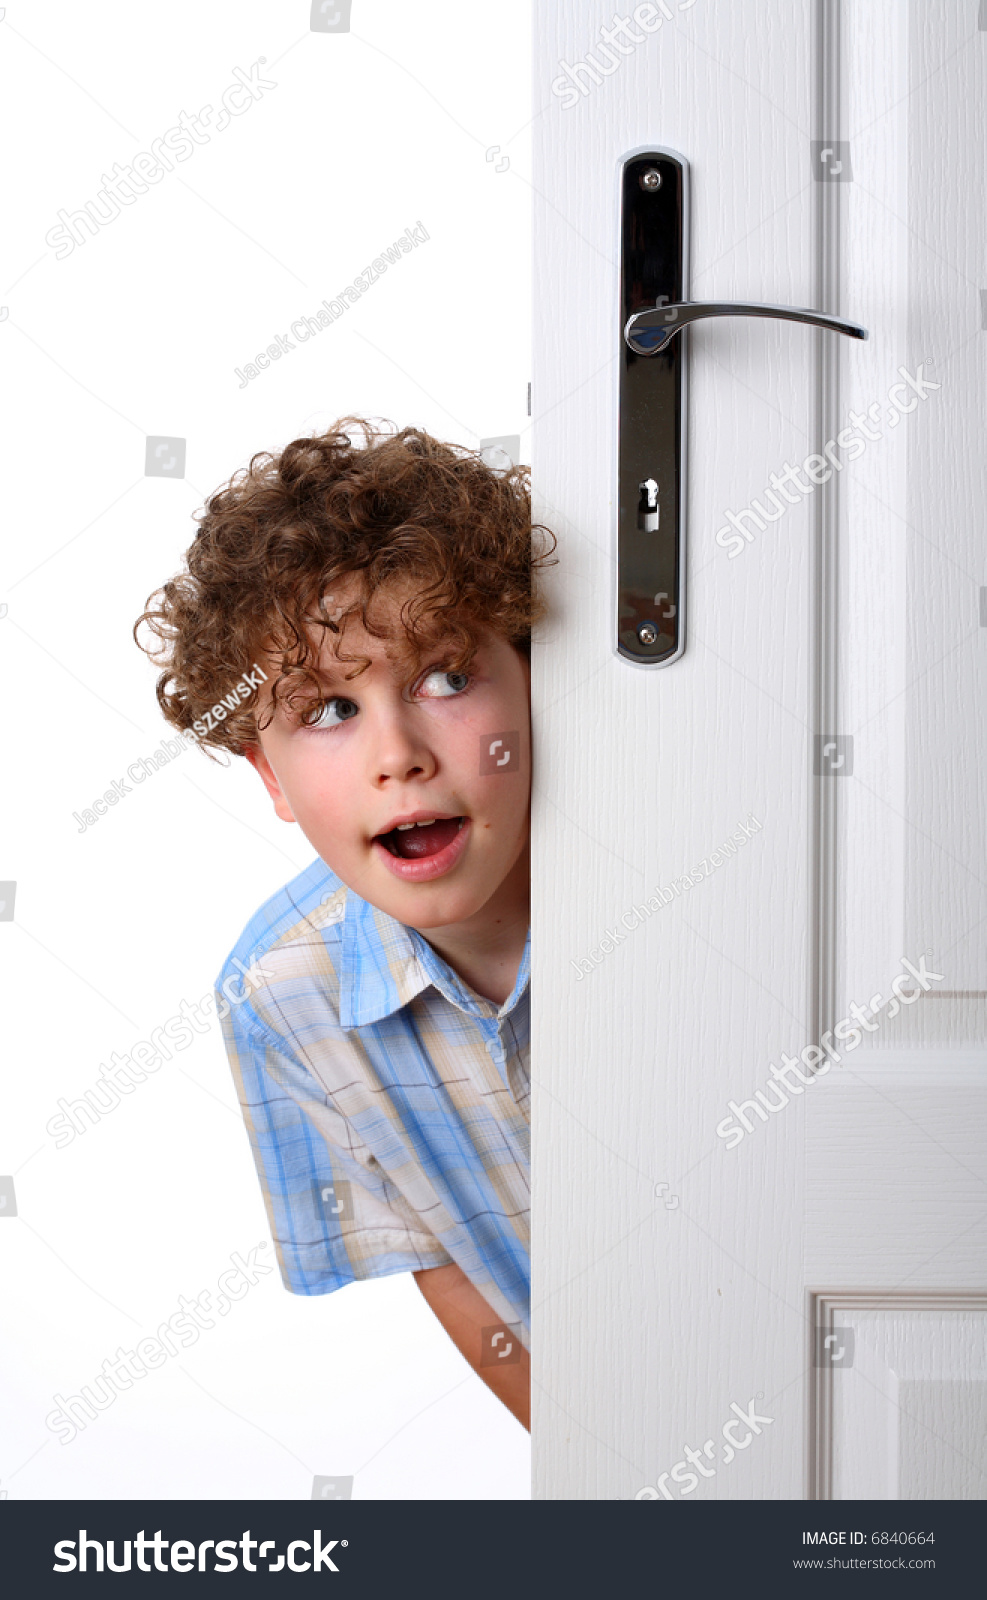 Мальчик и дверь открылась. Человек заглядует в дверь. Заглядывает в дверь. Мальчик за дверью. Ребенок заглядывает в дверь.